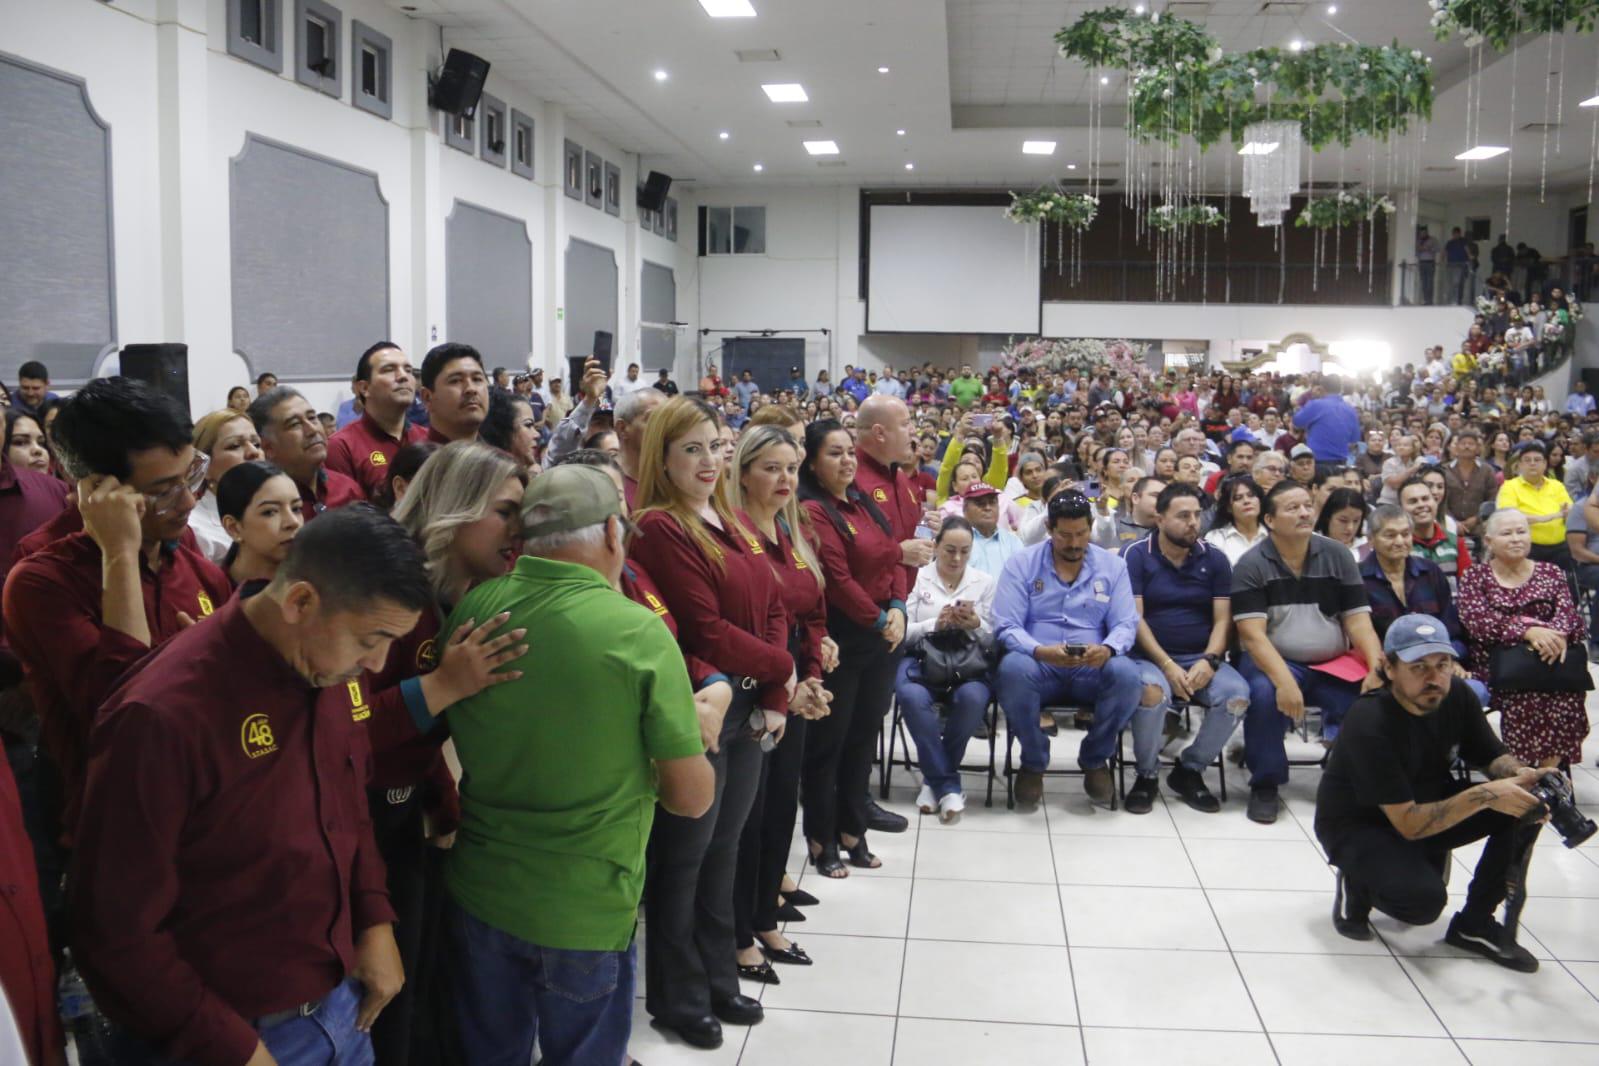 $!Entregan apoyos económicos a trabajadores del estado en el Stasac, en Culiacán